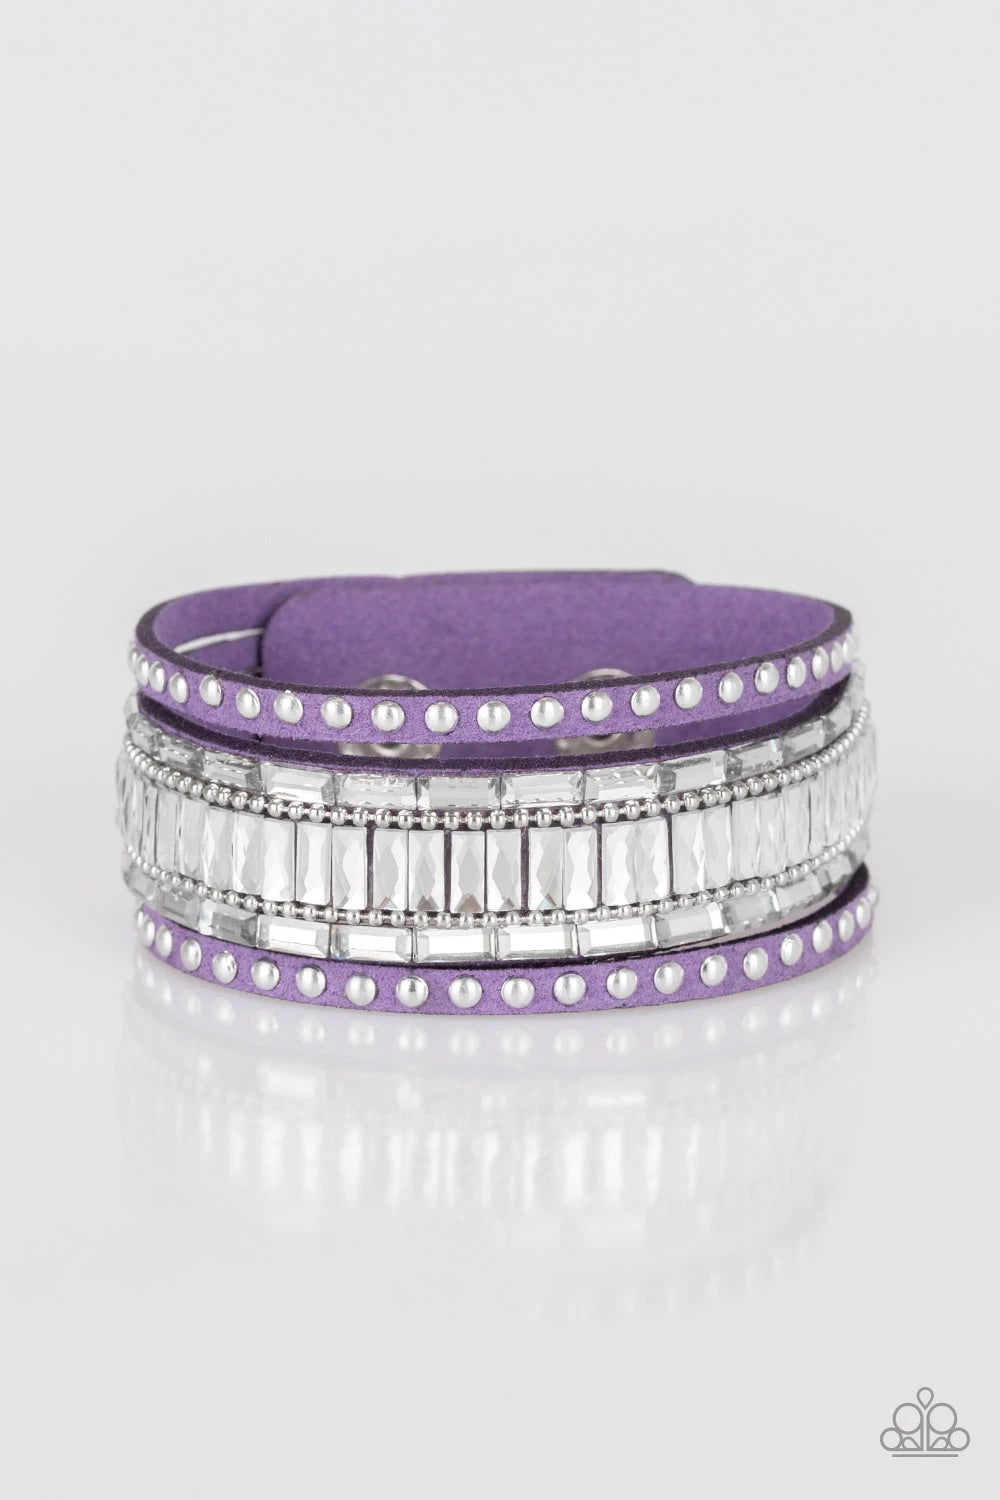 Rock Star Rocker Purple Bracelet freeshipping - JewLz4u Gemstone Gallery